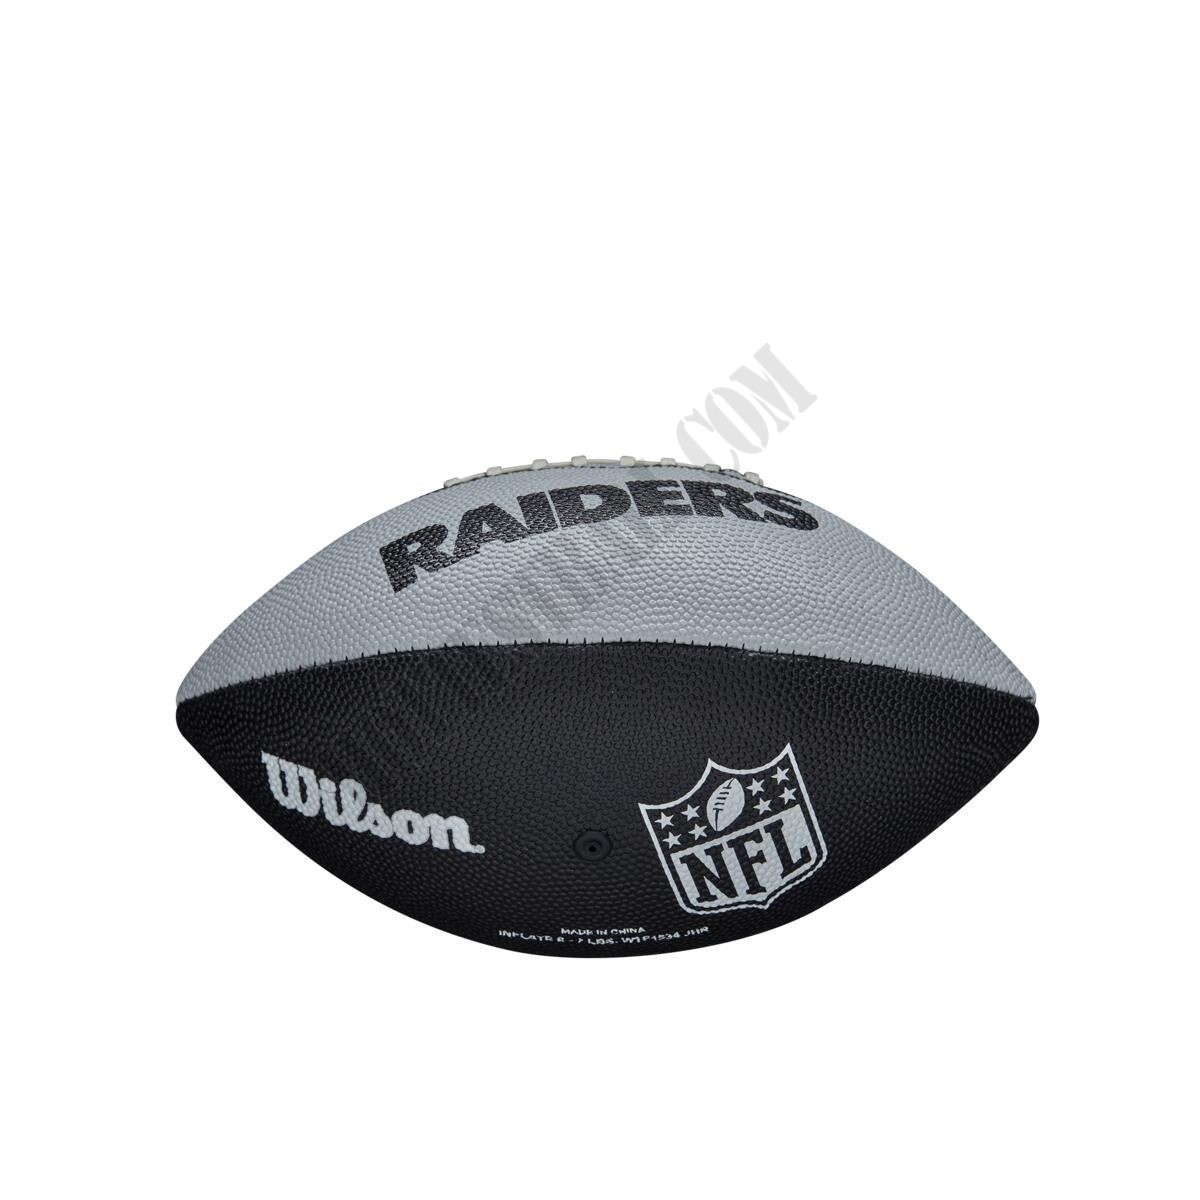 NFL Team Tailgate Football - Las Vegas Raiders - Wilson Discount Store - NFL Team Tailgate Football - Las Vegas Raiders - Wilson Discount Store